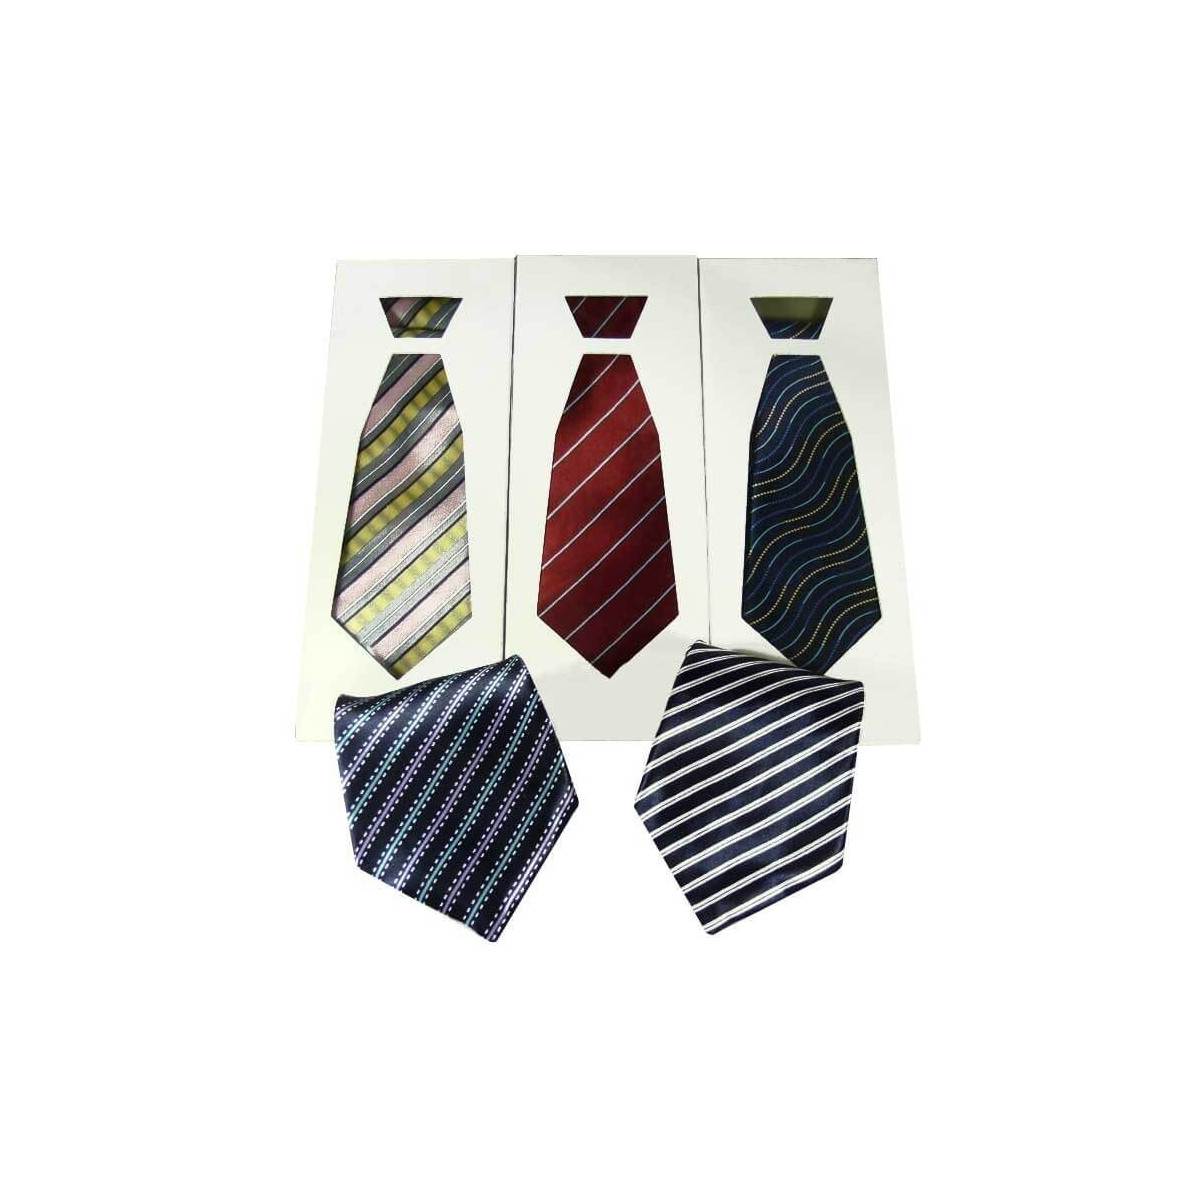 Cravatte originali